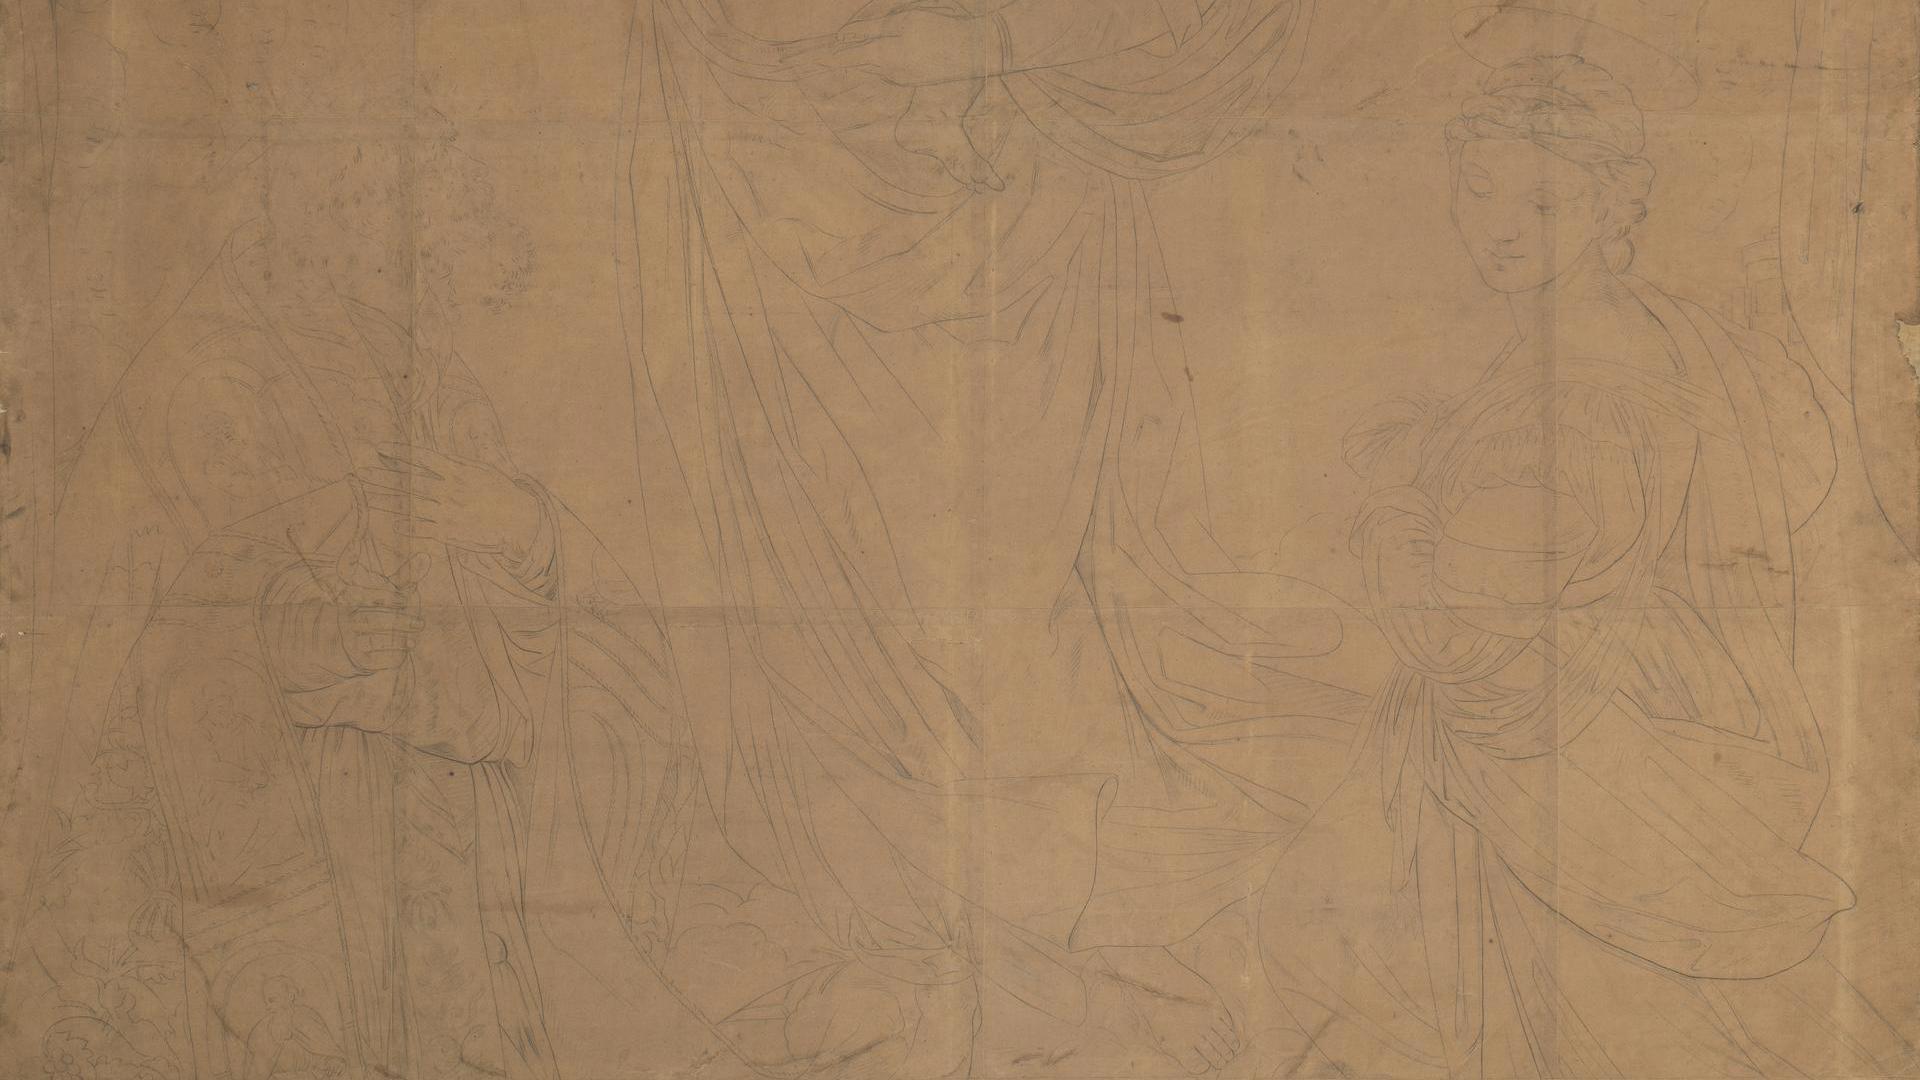 The Sistine Madonna by Jakob Schlesinger (after Raphael)